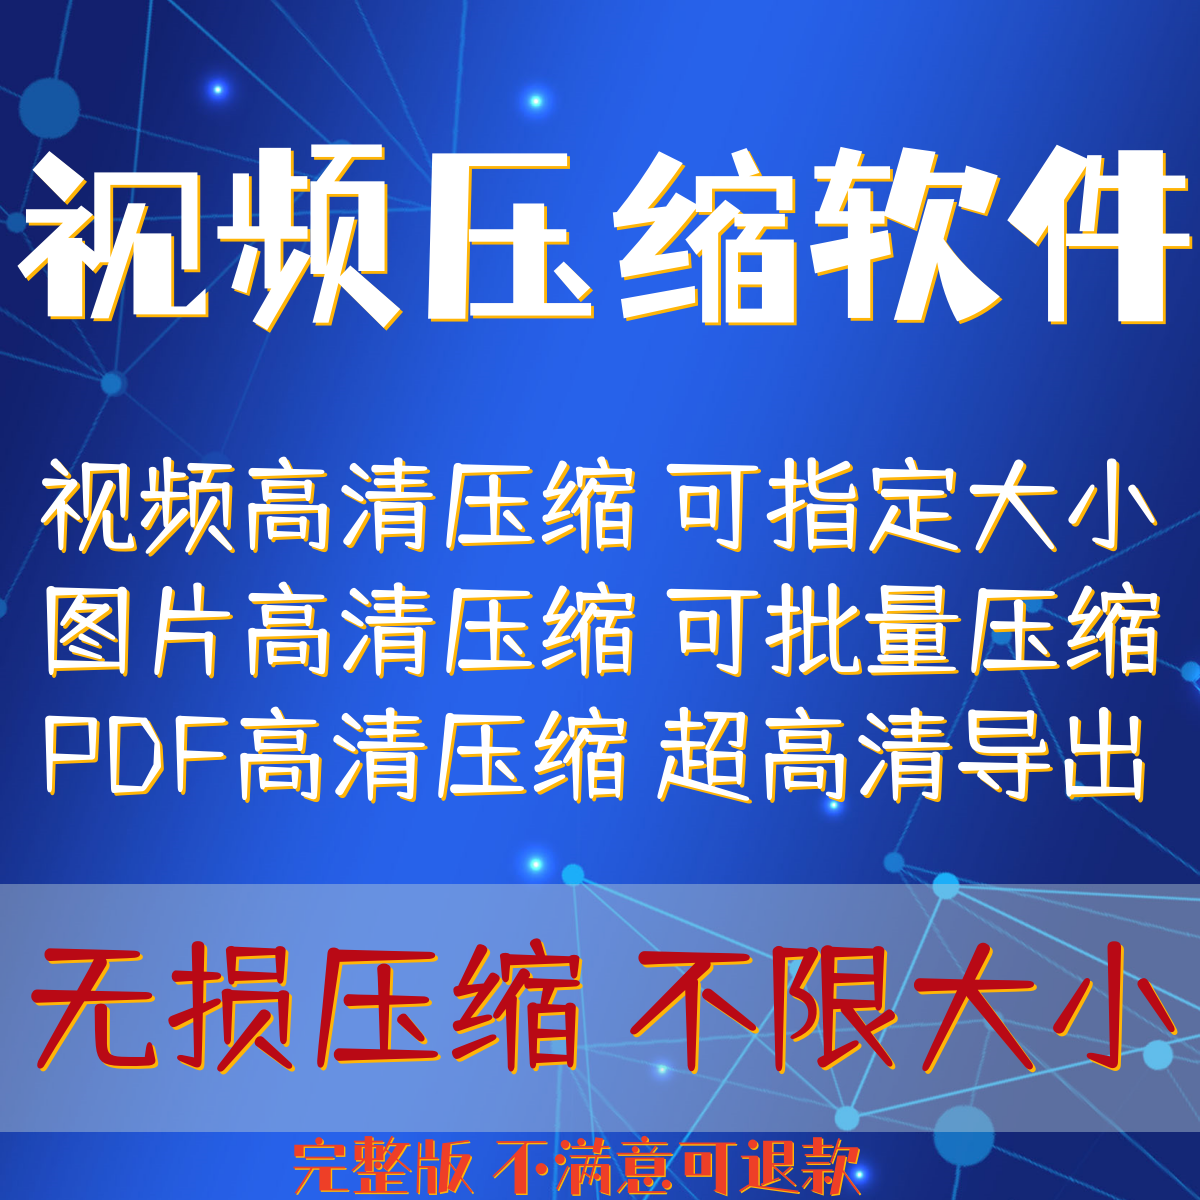 视频压缩工具mp4图片JPG PNG PDF软件批量高清专业高清无损压缩器